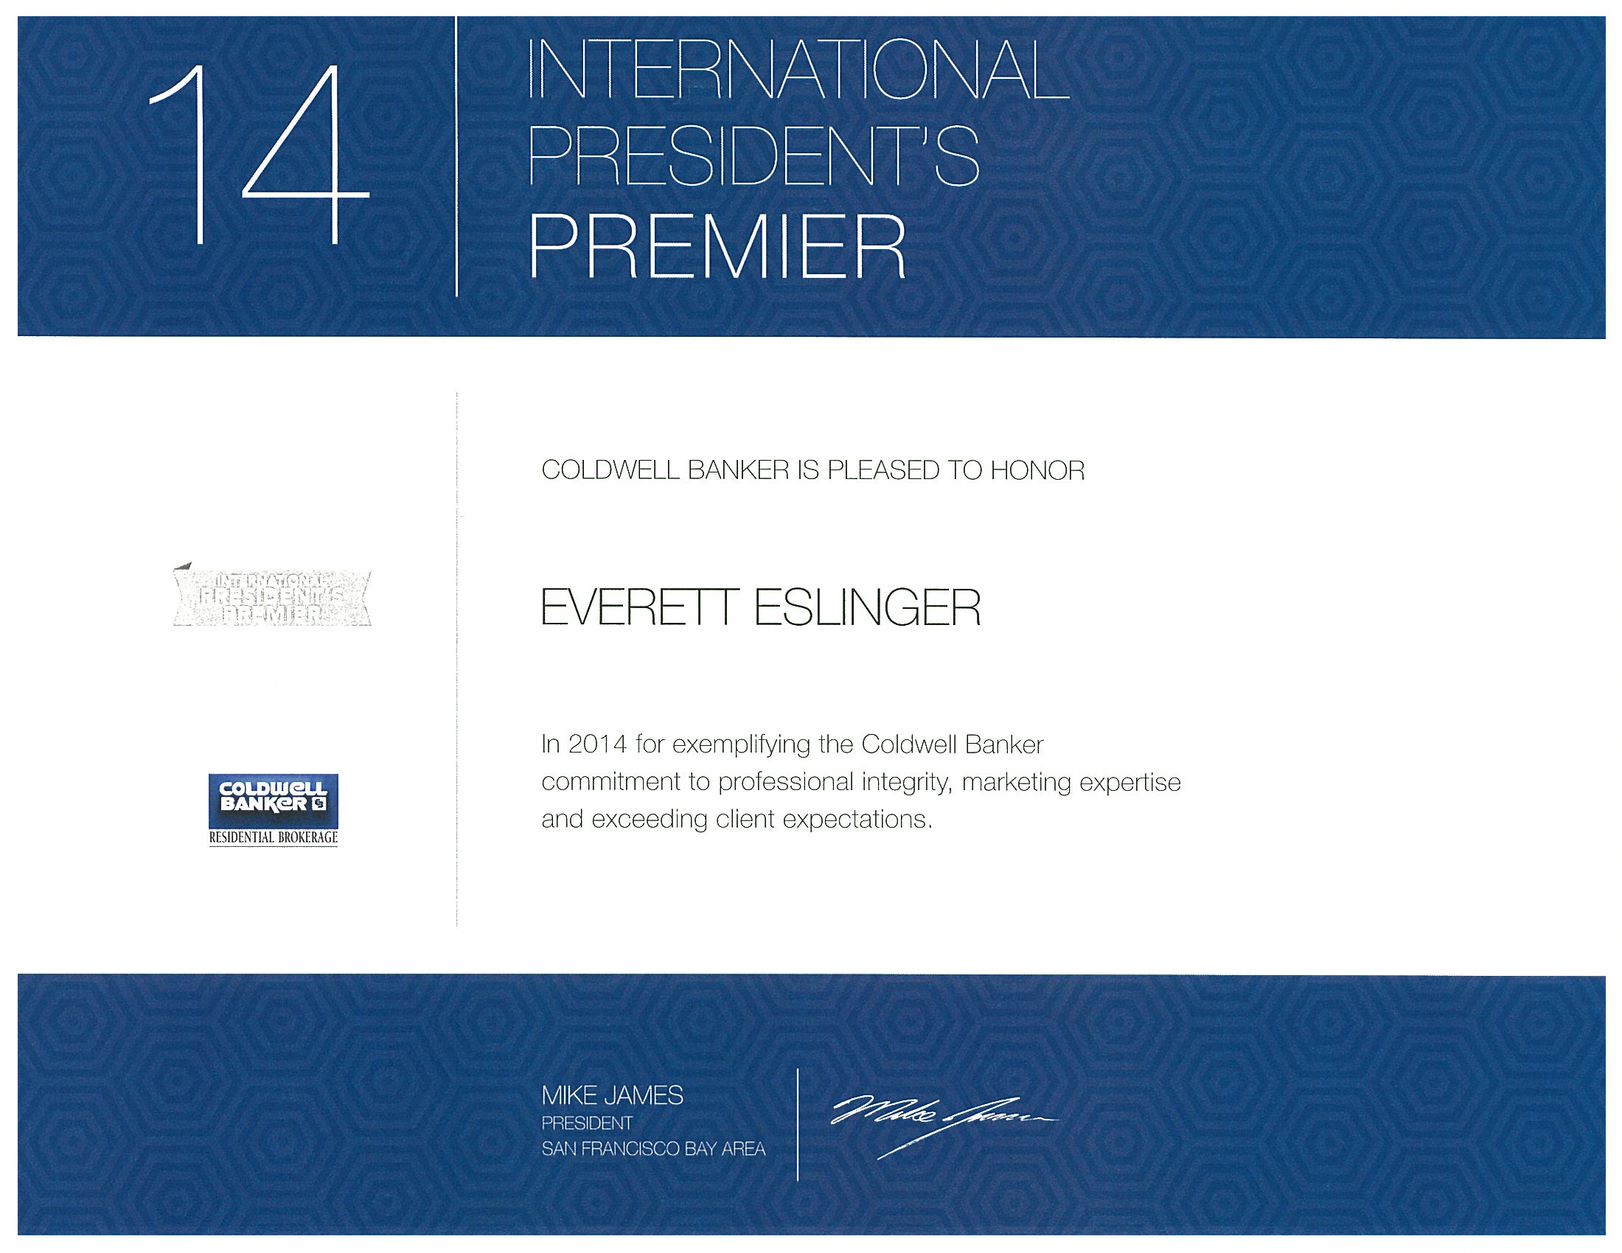 2014 Intl Pres Premier Award